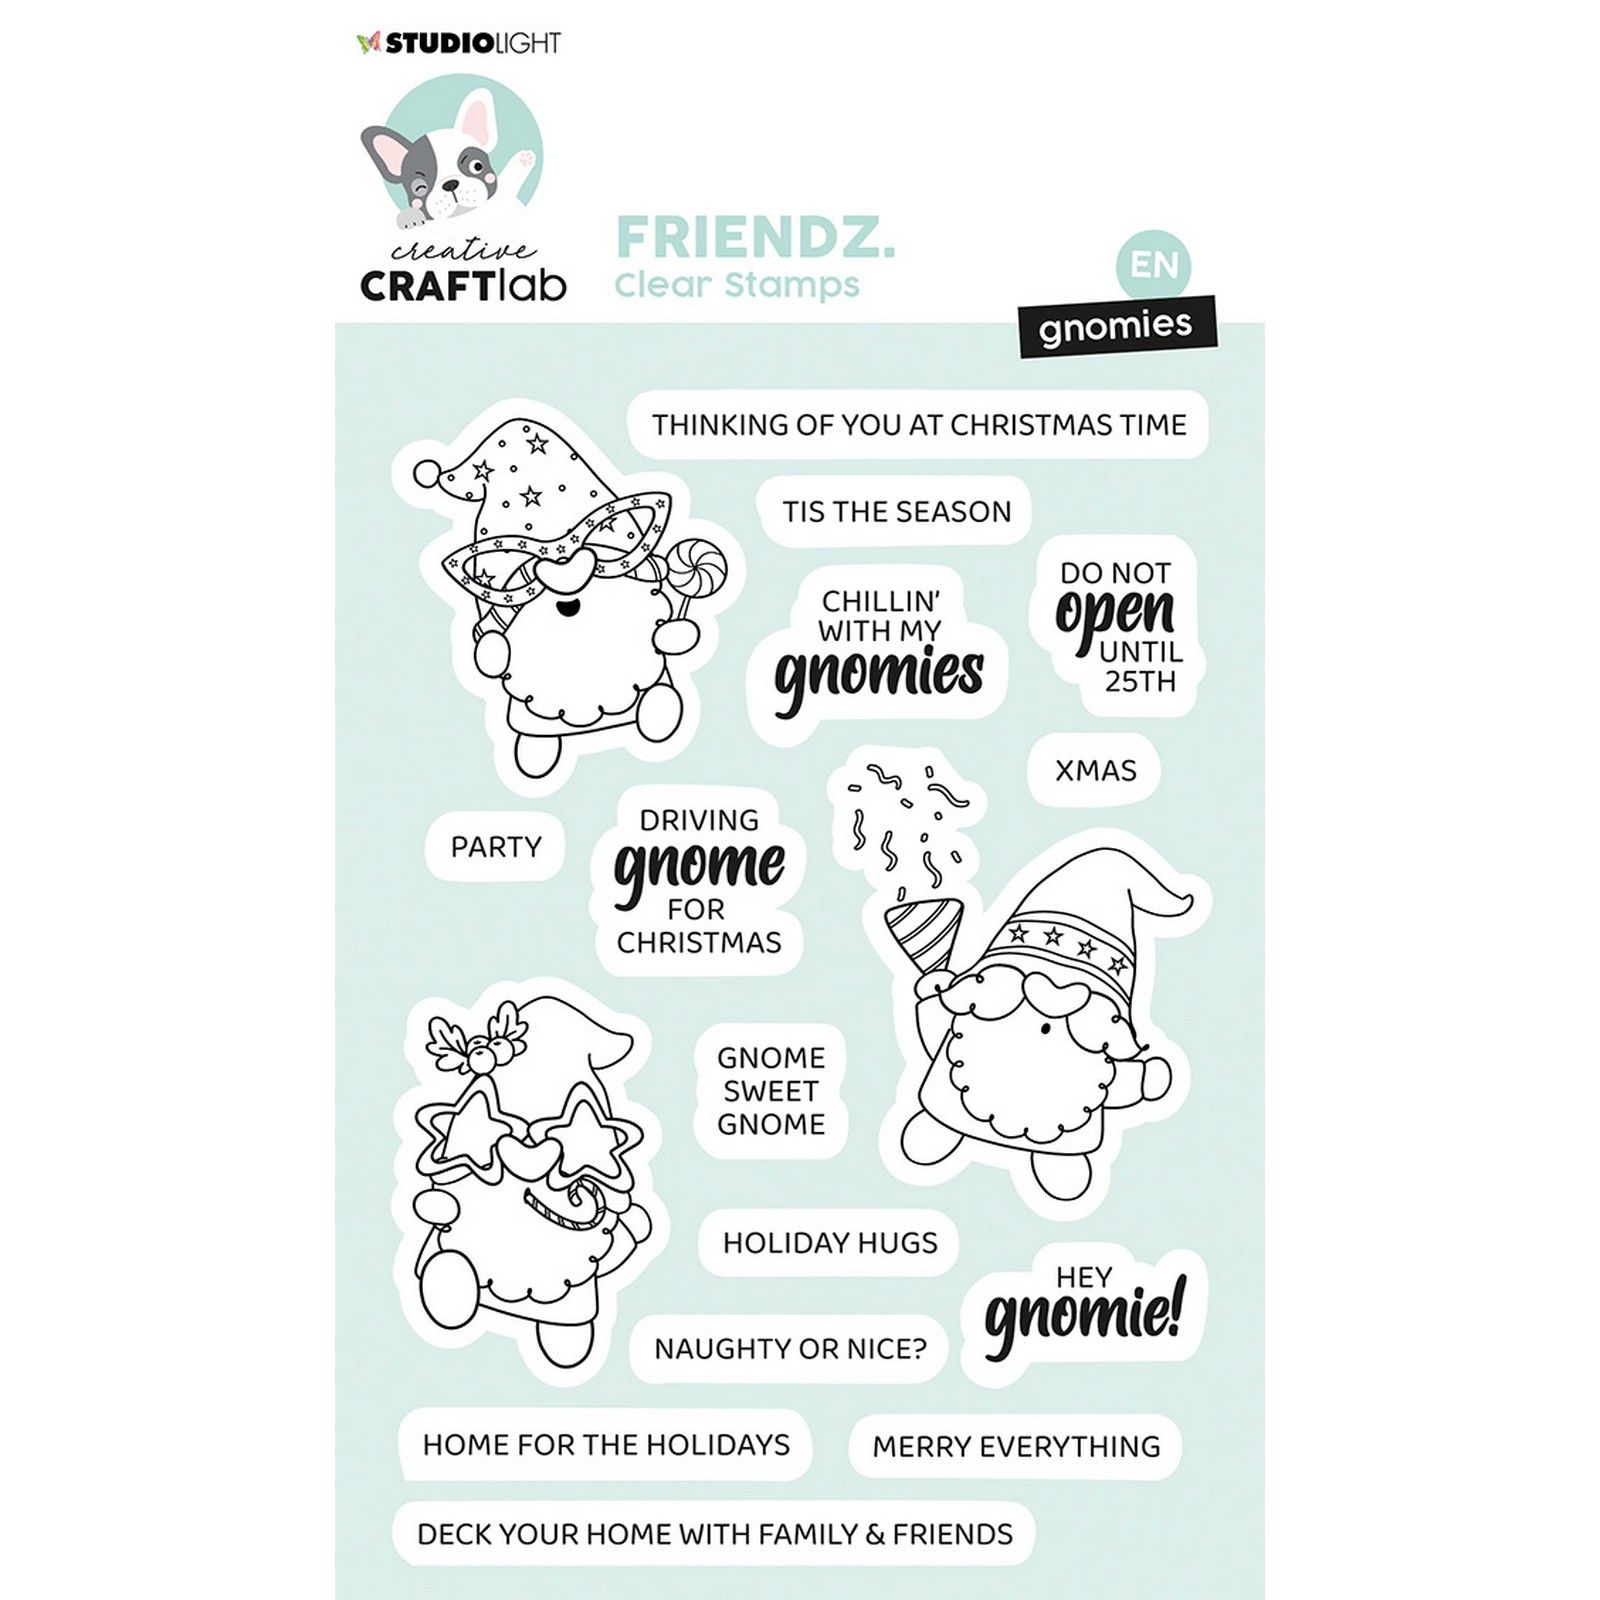 Creative Craftlab • Friendz Clear Stamp Gnomies